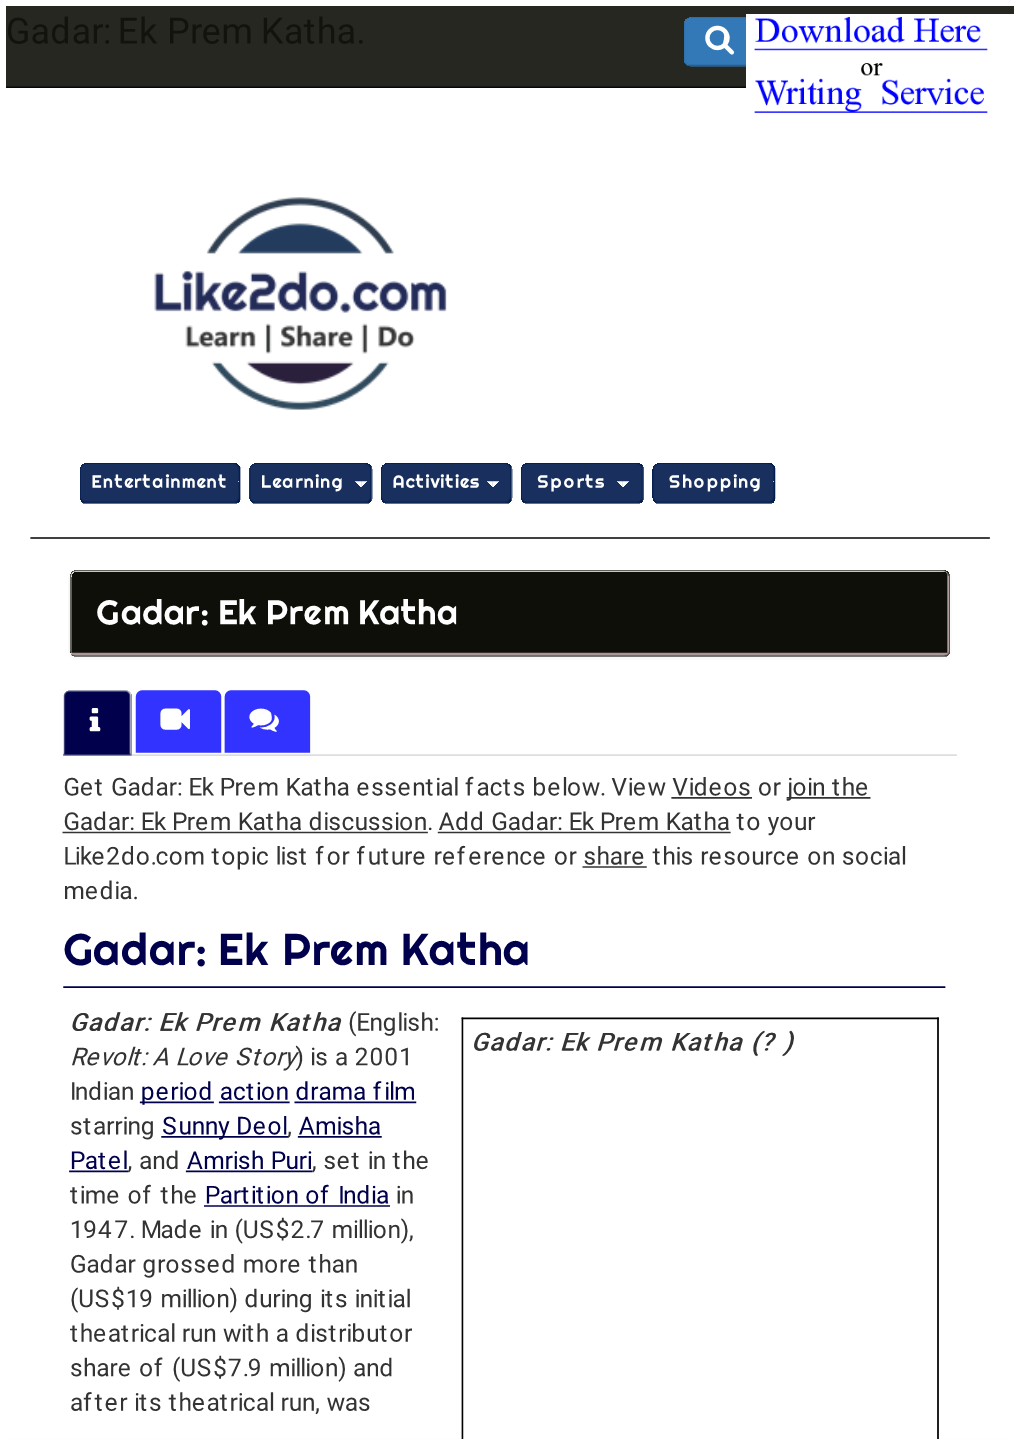 Gadar: Ek Prem Katha Resource